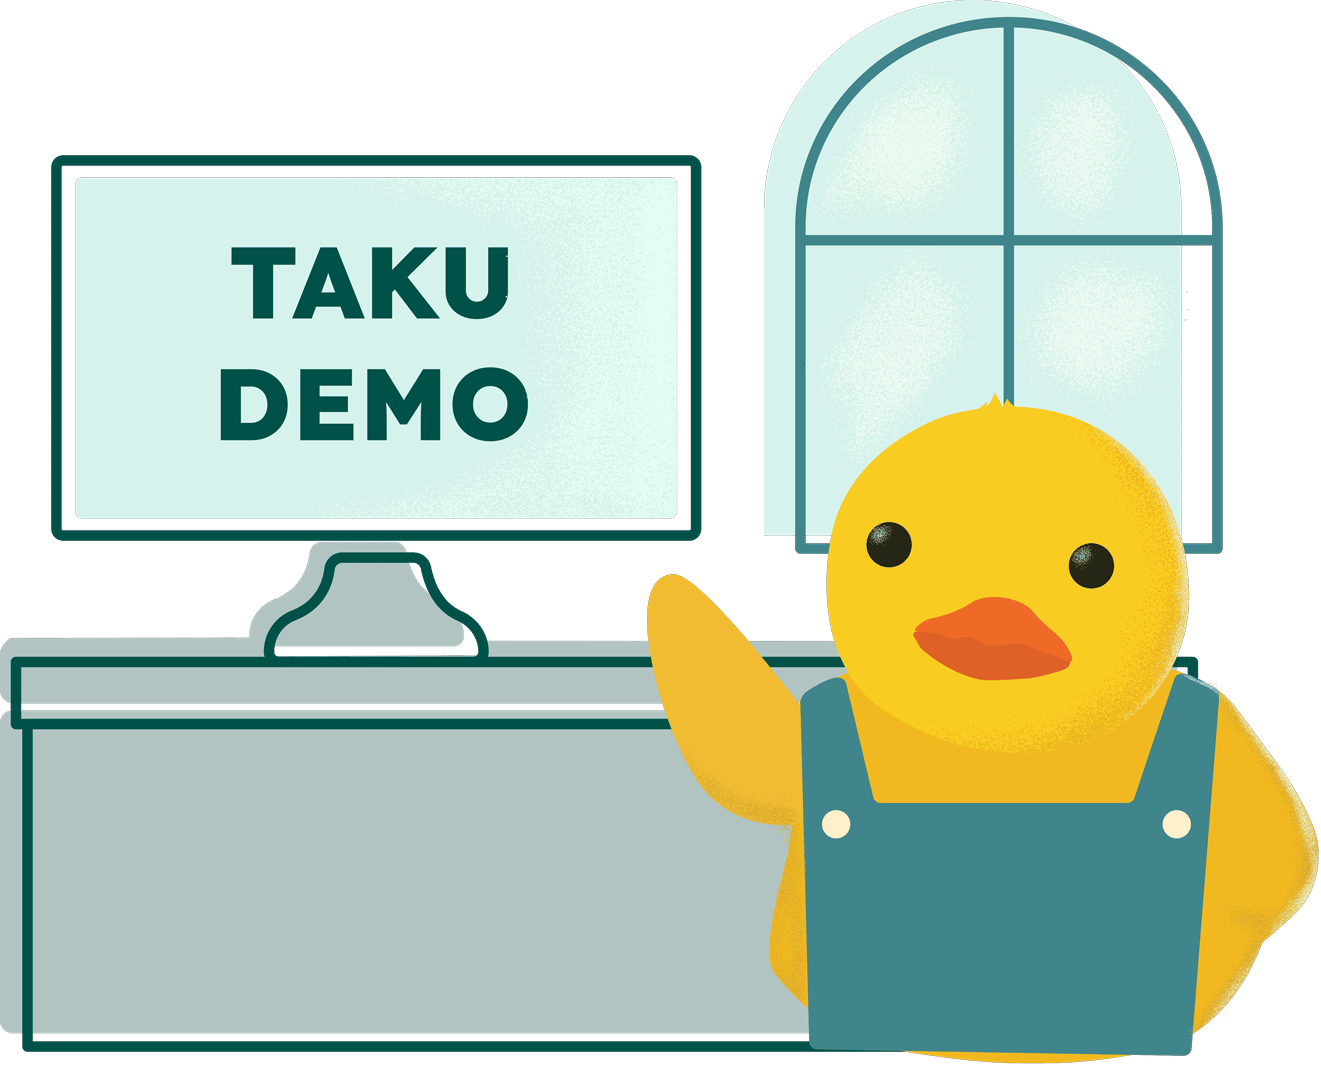 TAKU Duck showcasing demo